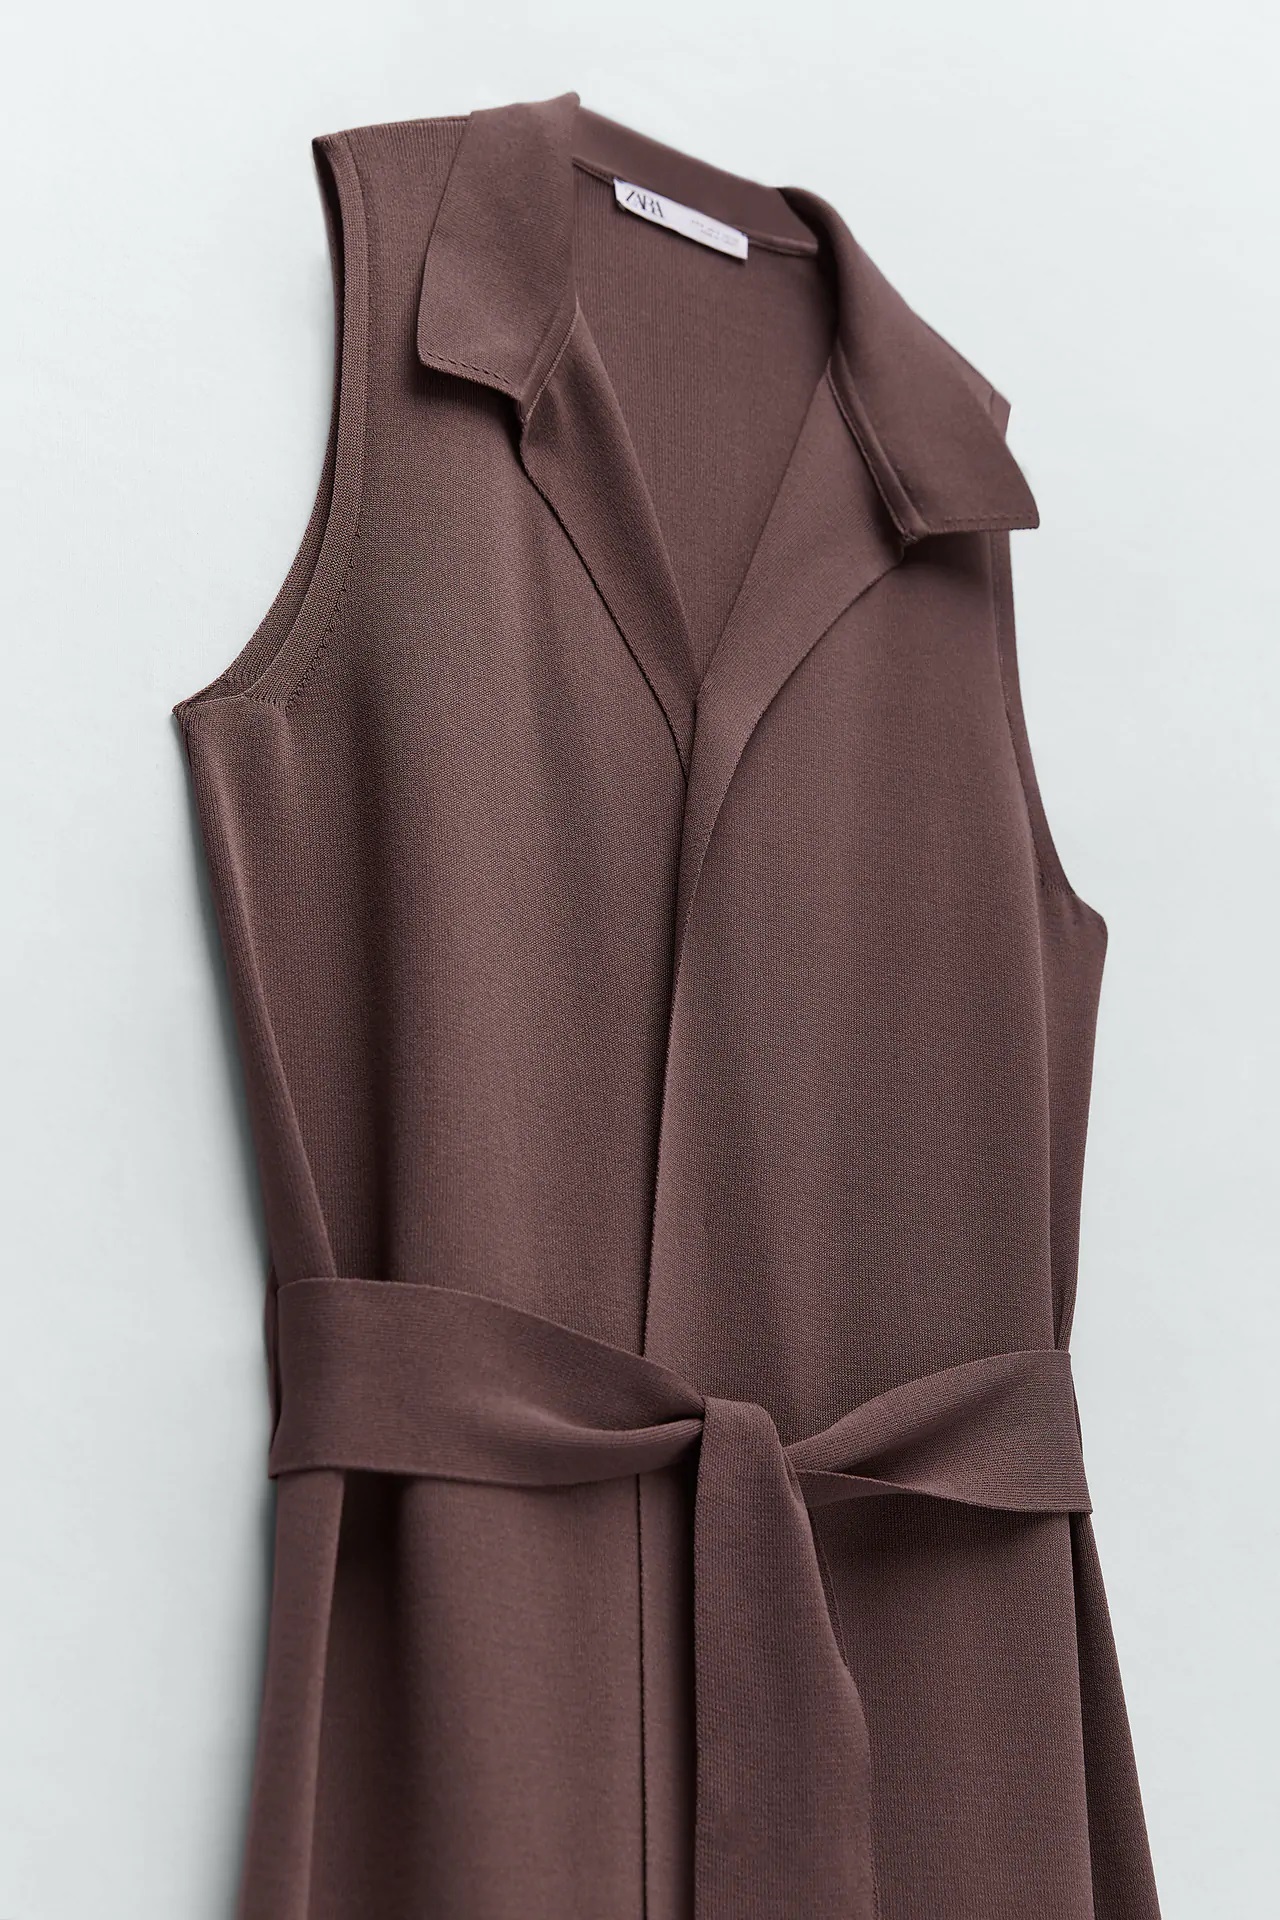 Este es el chaleco largo de Zara que marcará estilo en otoño y te servirá de vestido en verano